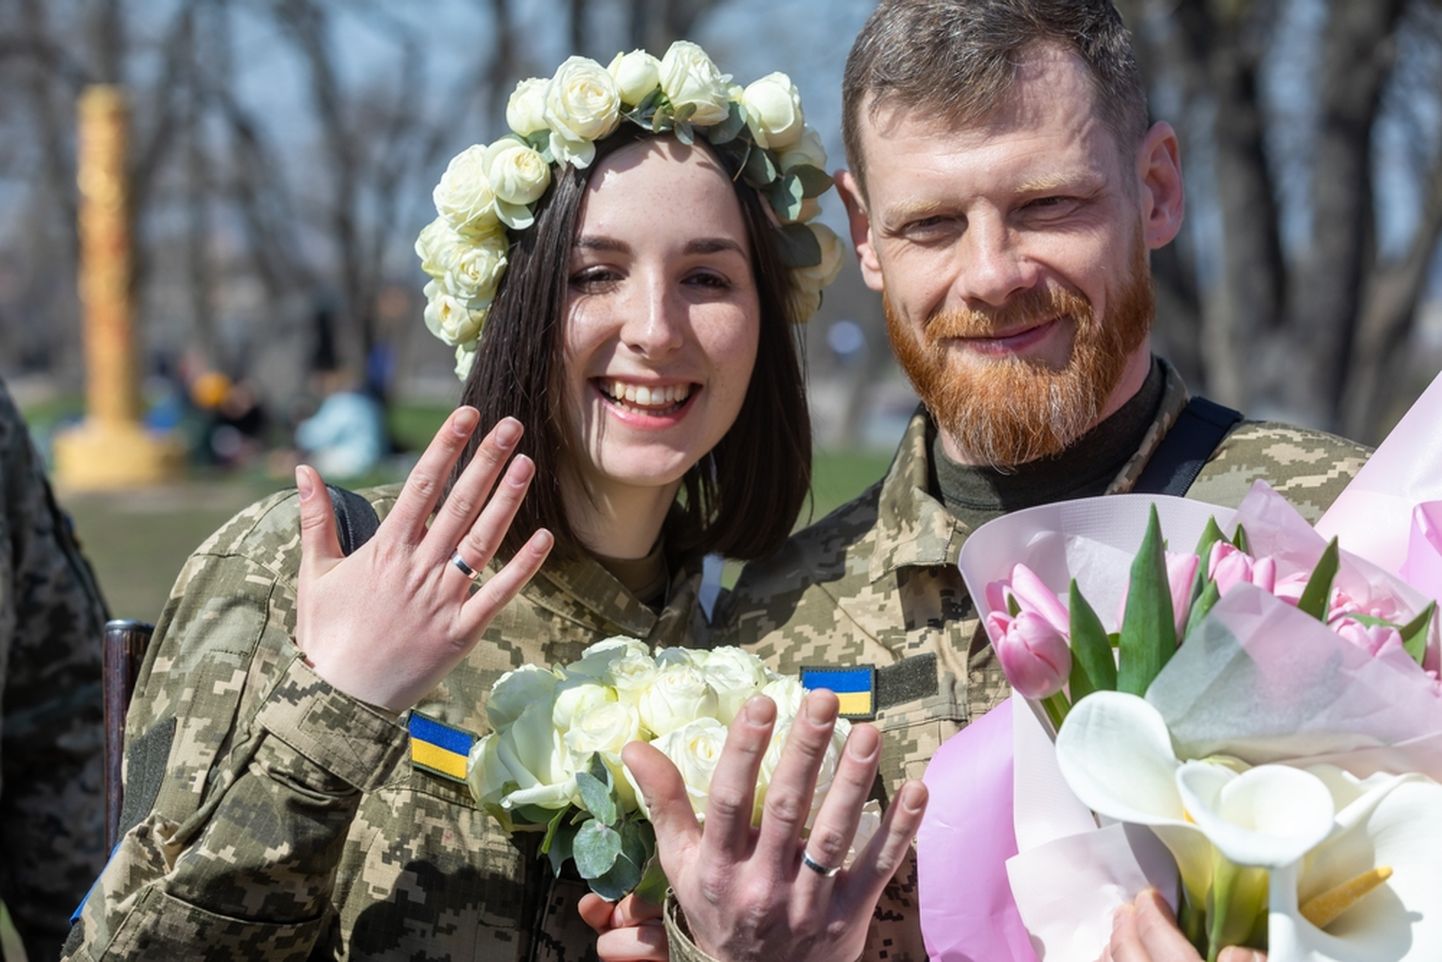 Siin pildil on paar, kes abiellus 7. aprillil Kiievis. Samal ajal käib Ukrainas ulatuslik sõjategevus, kuid armastus ei küsi aega.